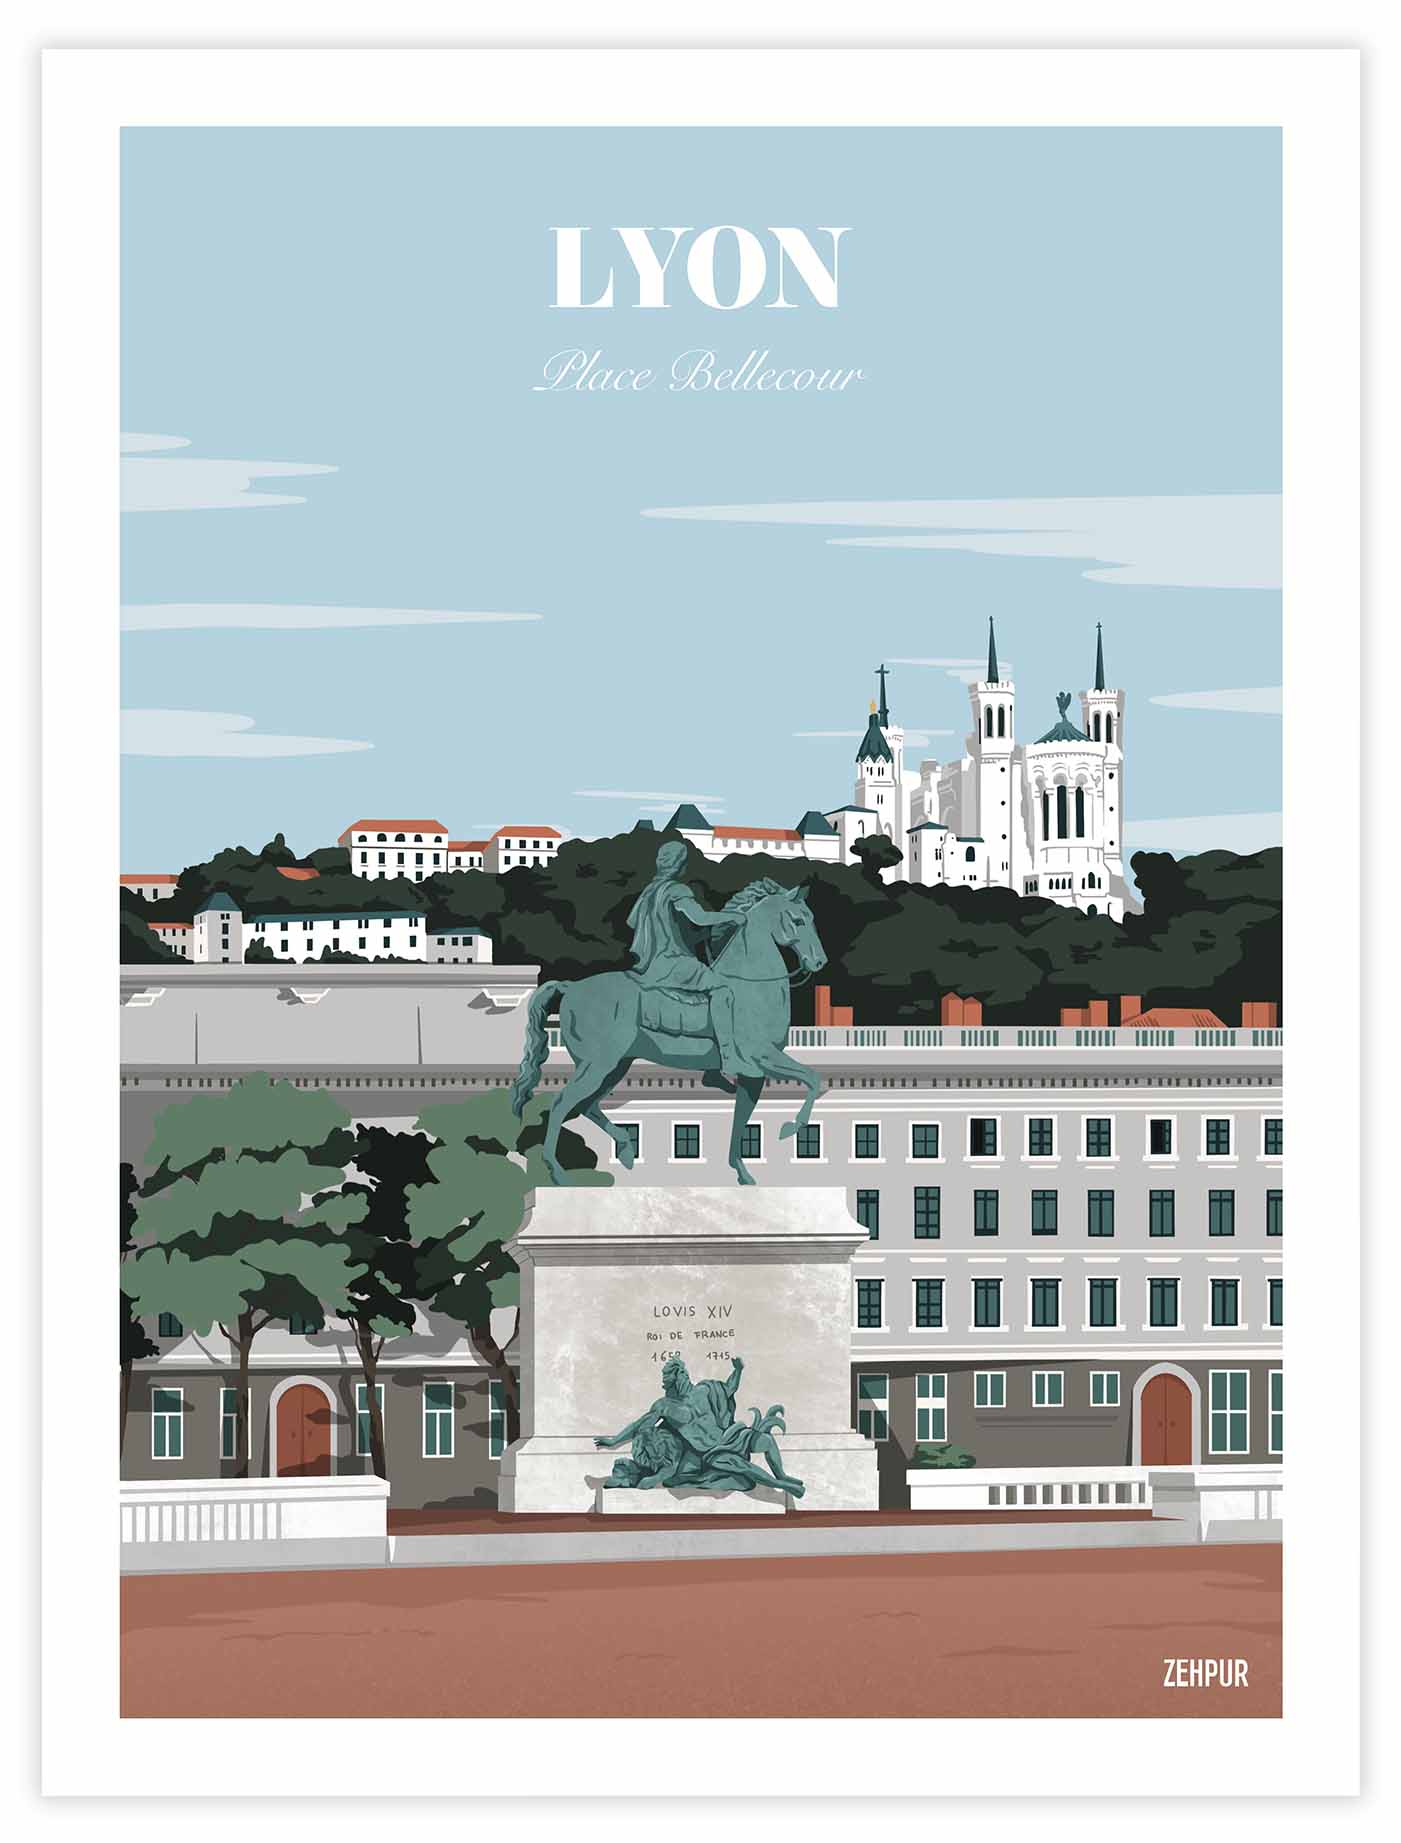 Poster Lyon